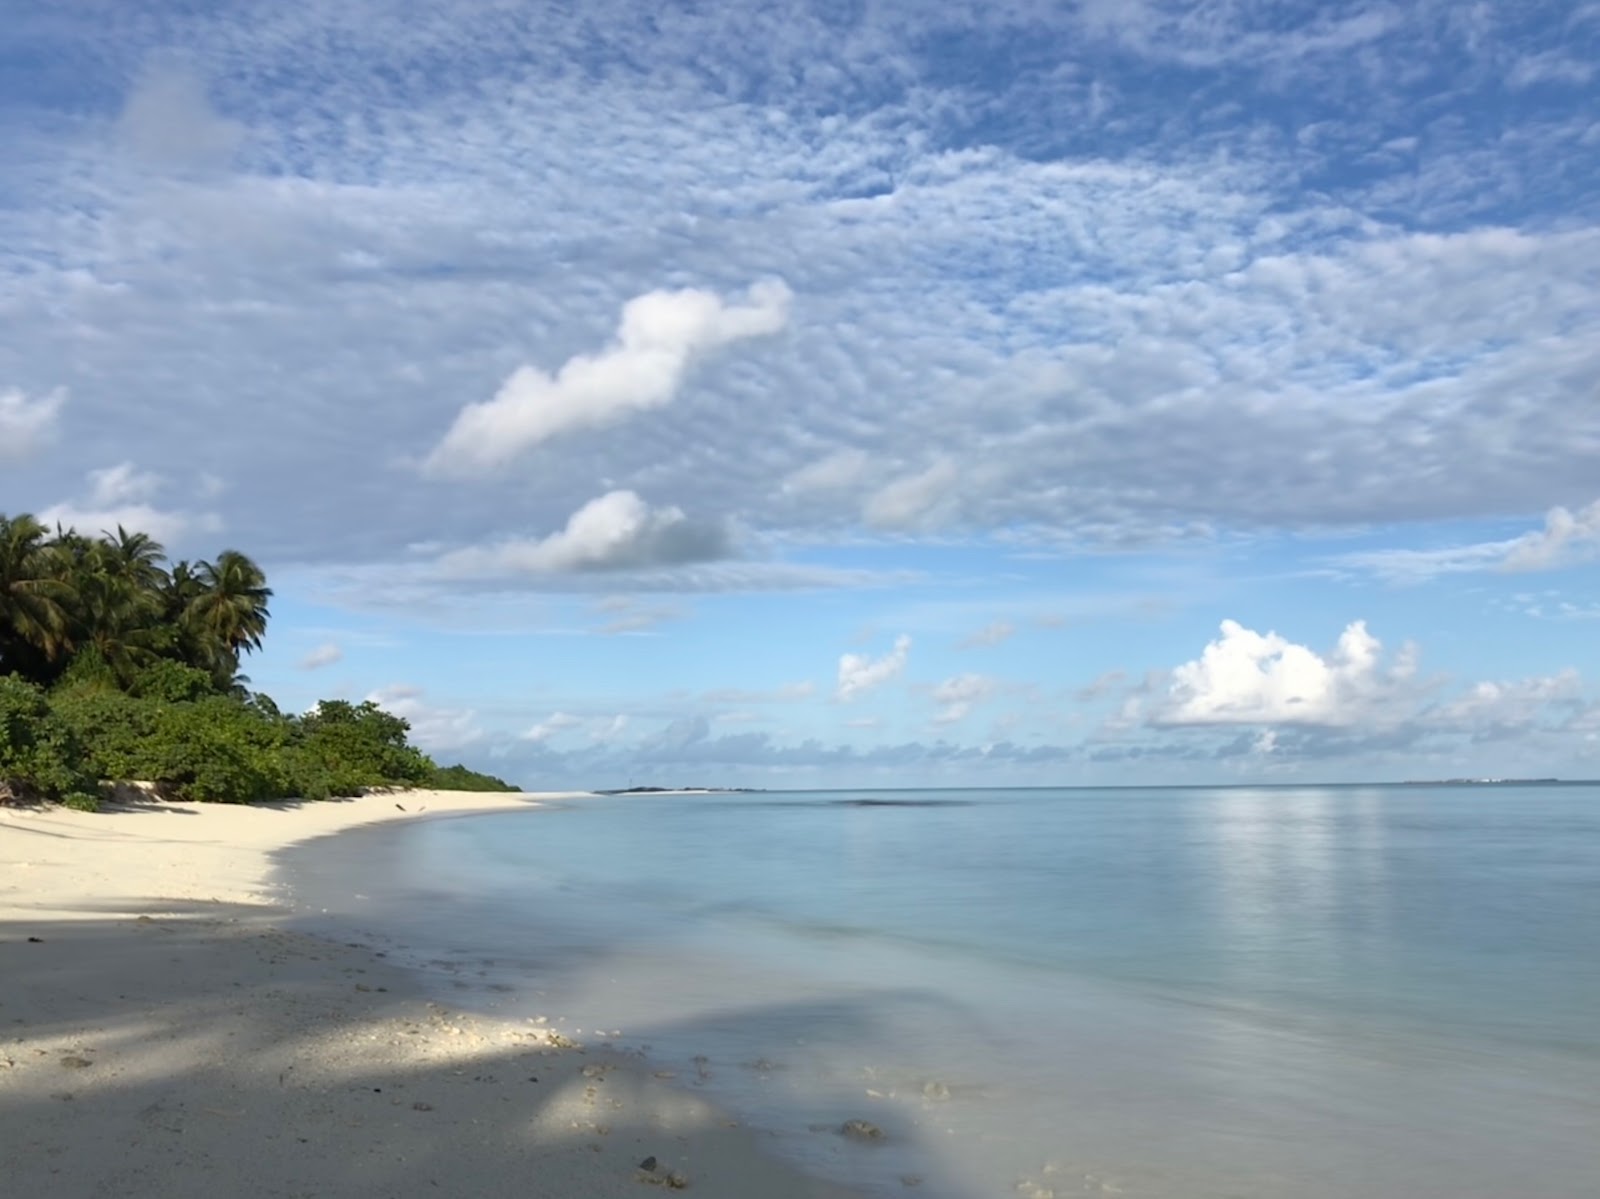 Fenfushee Island'in fotoğrafı beyaz kum yüzey ile